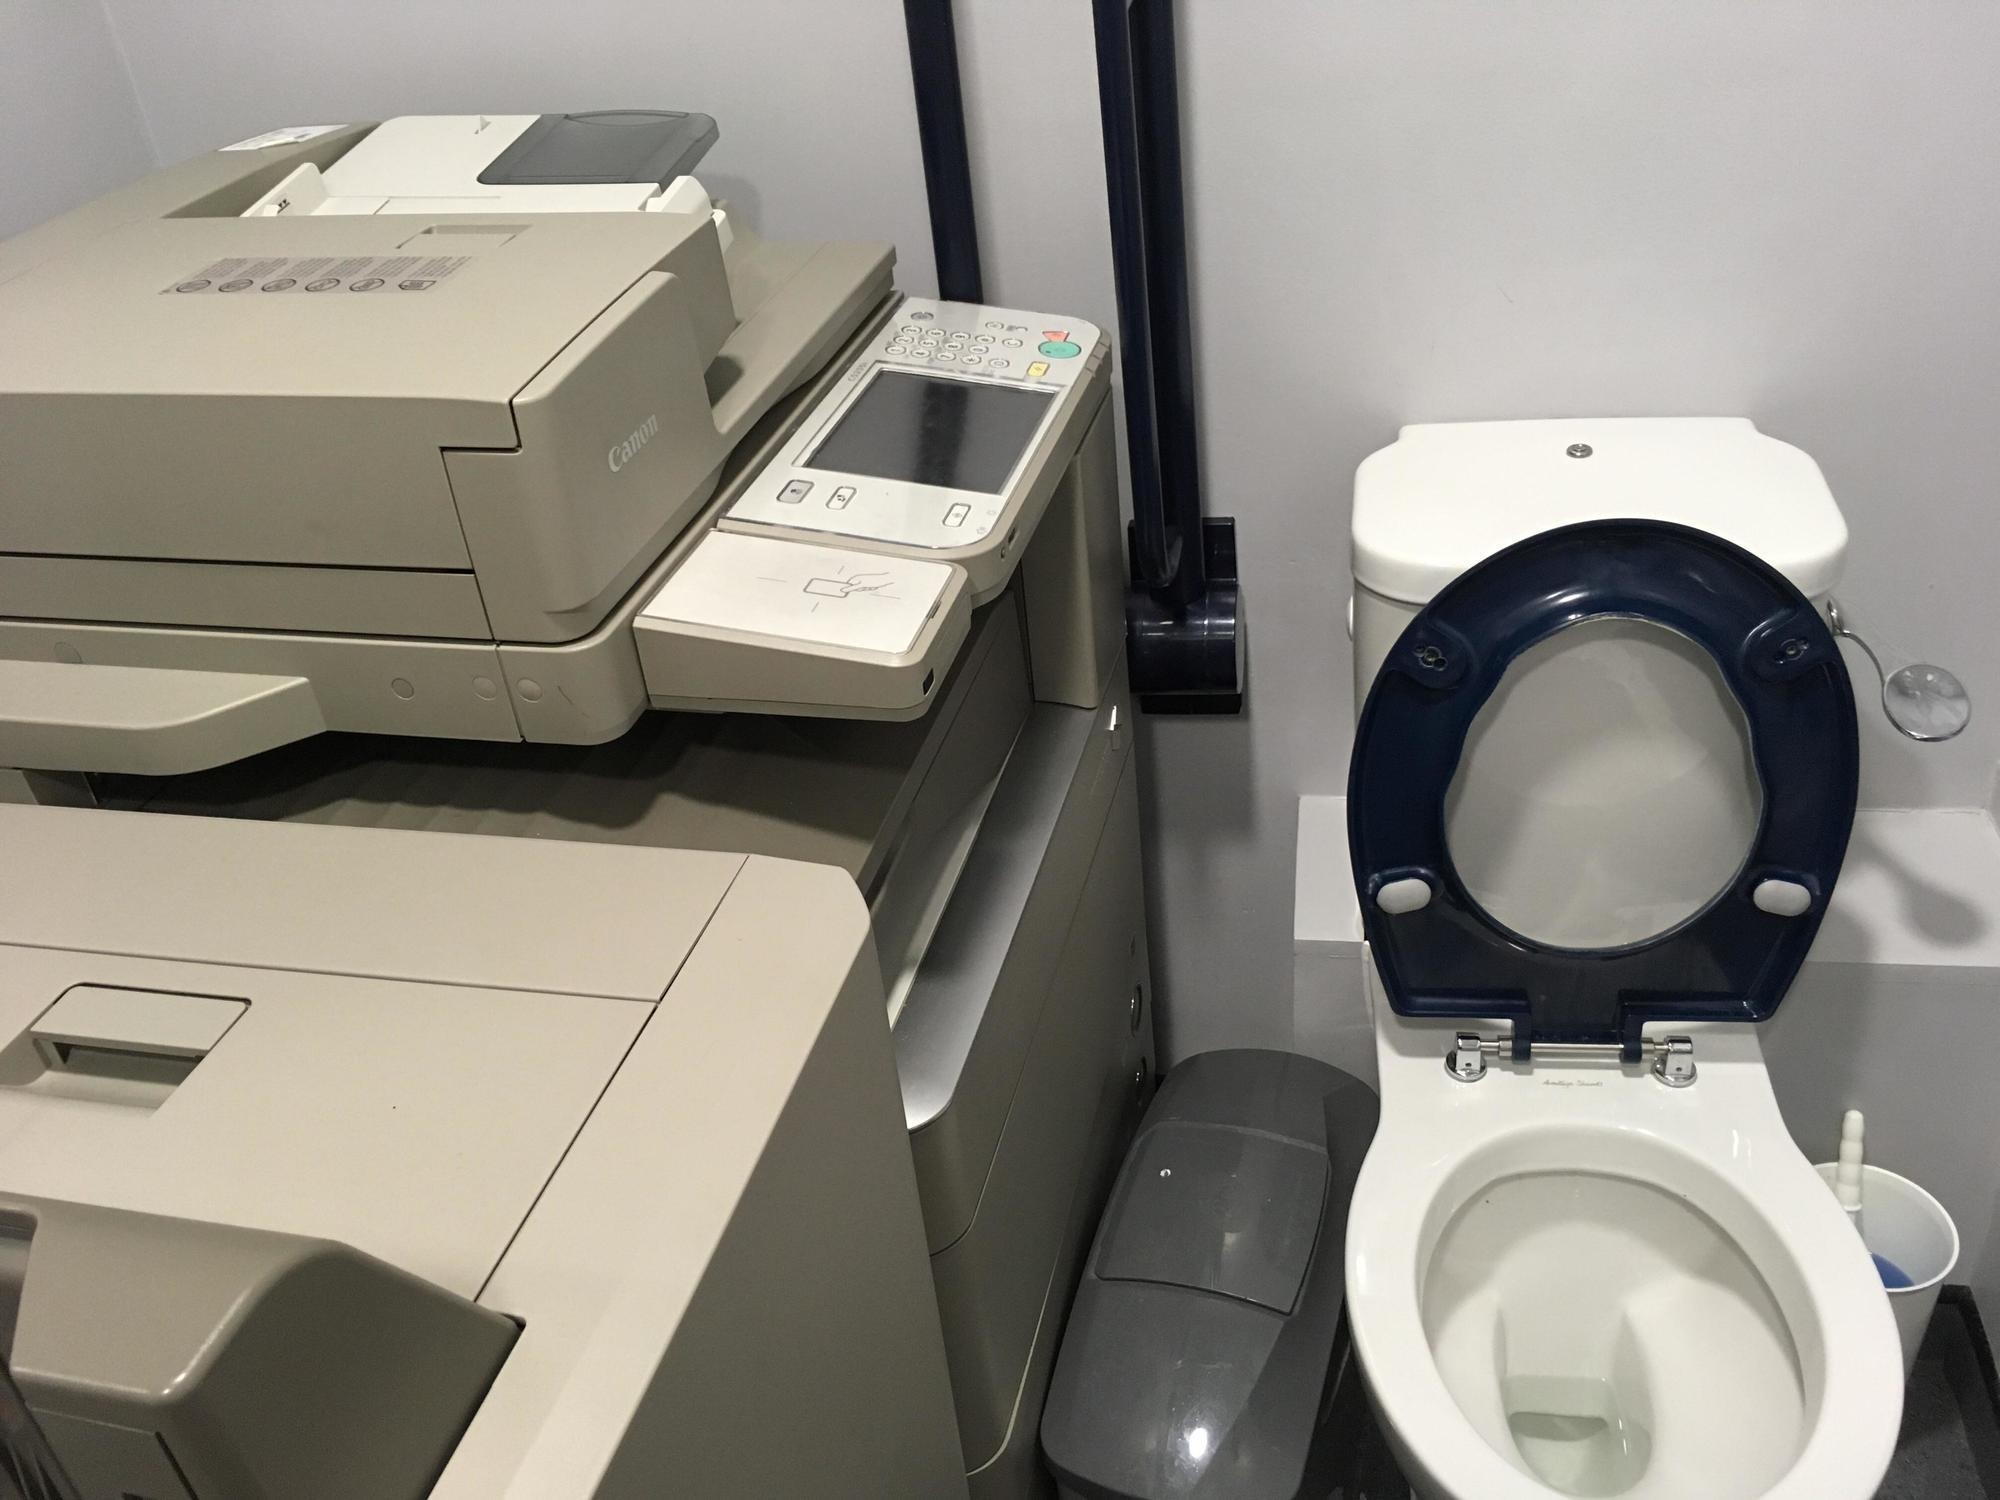 toilet next to the copy machine.